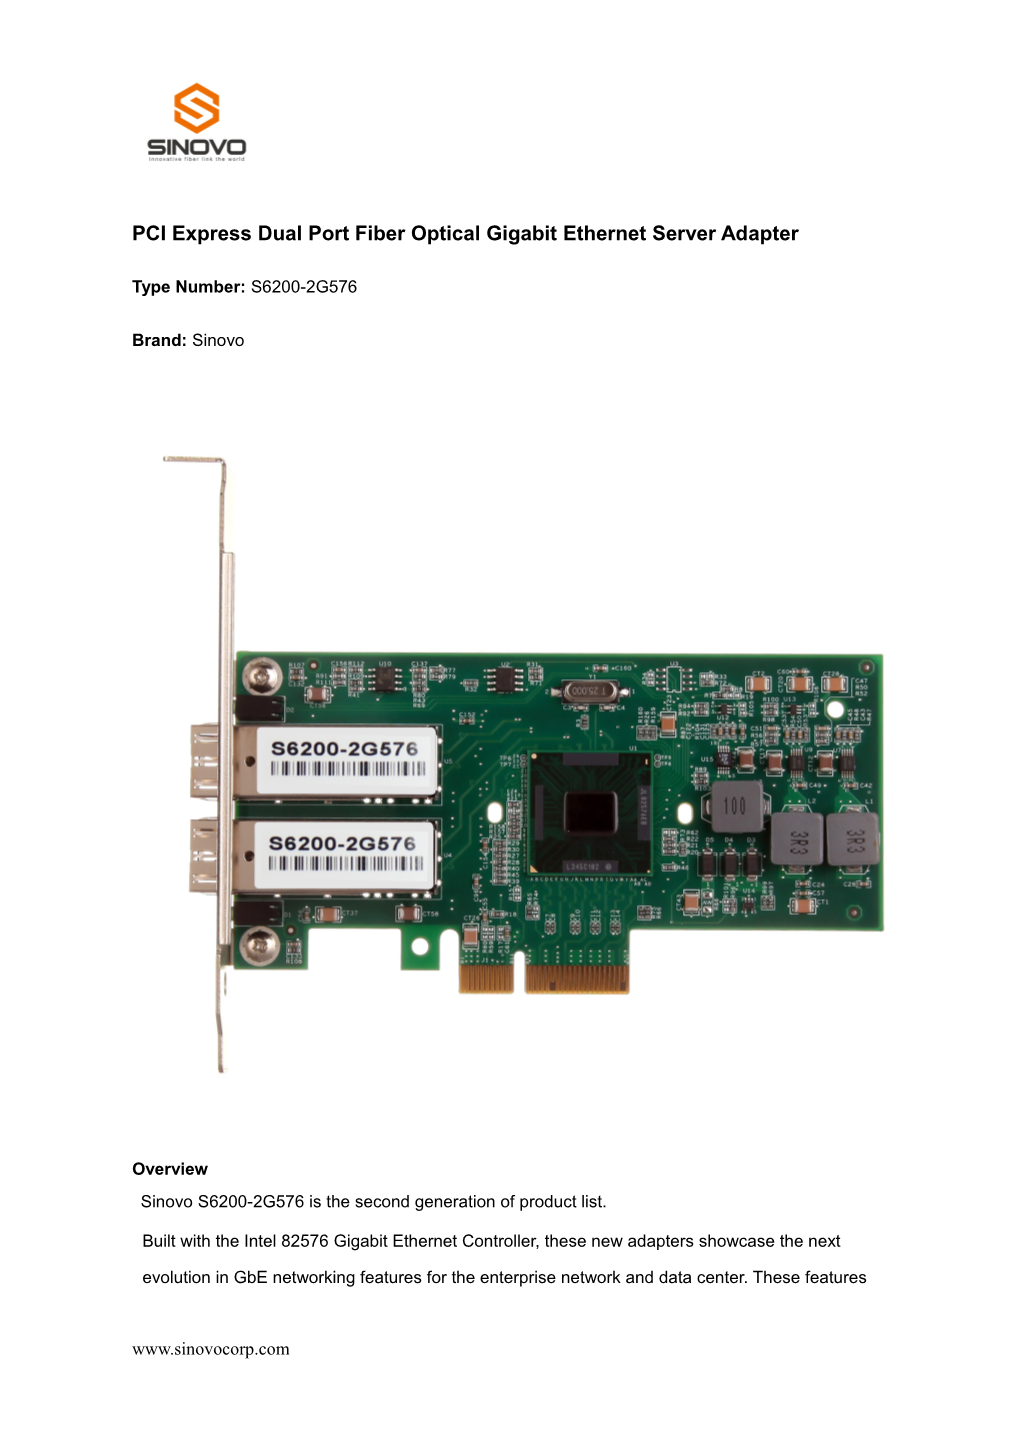 PCI Express Quad Port Gigabit Ethernet Server Adapter